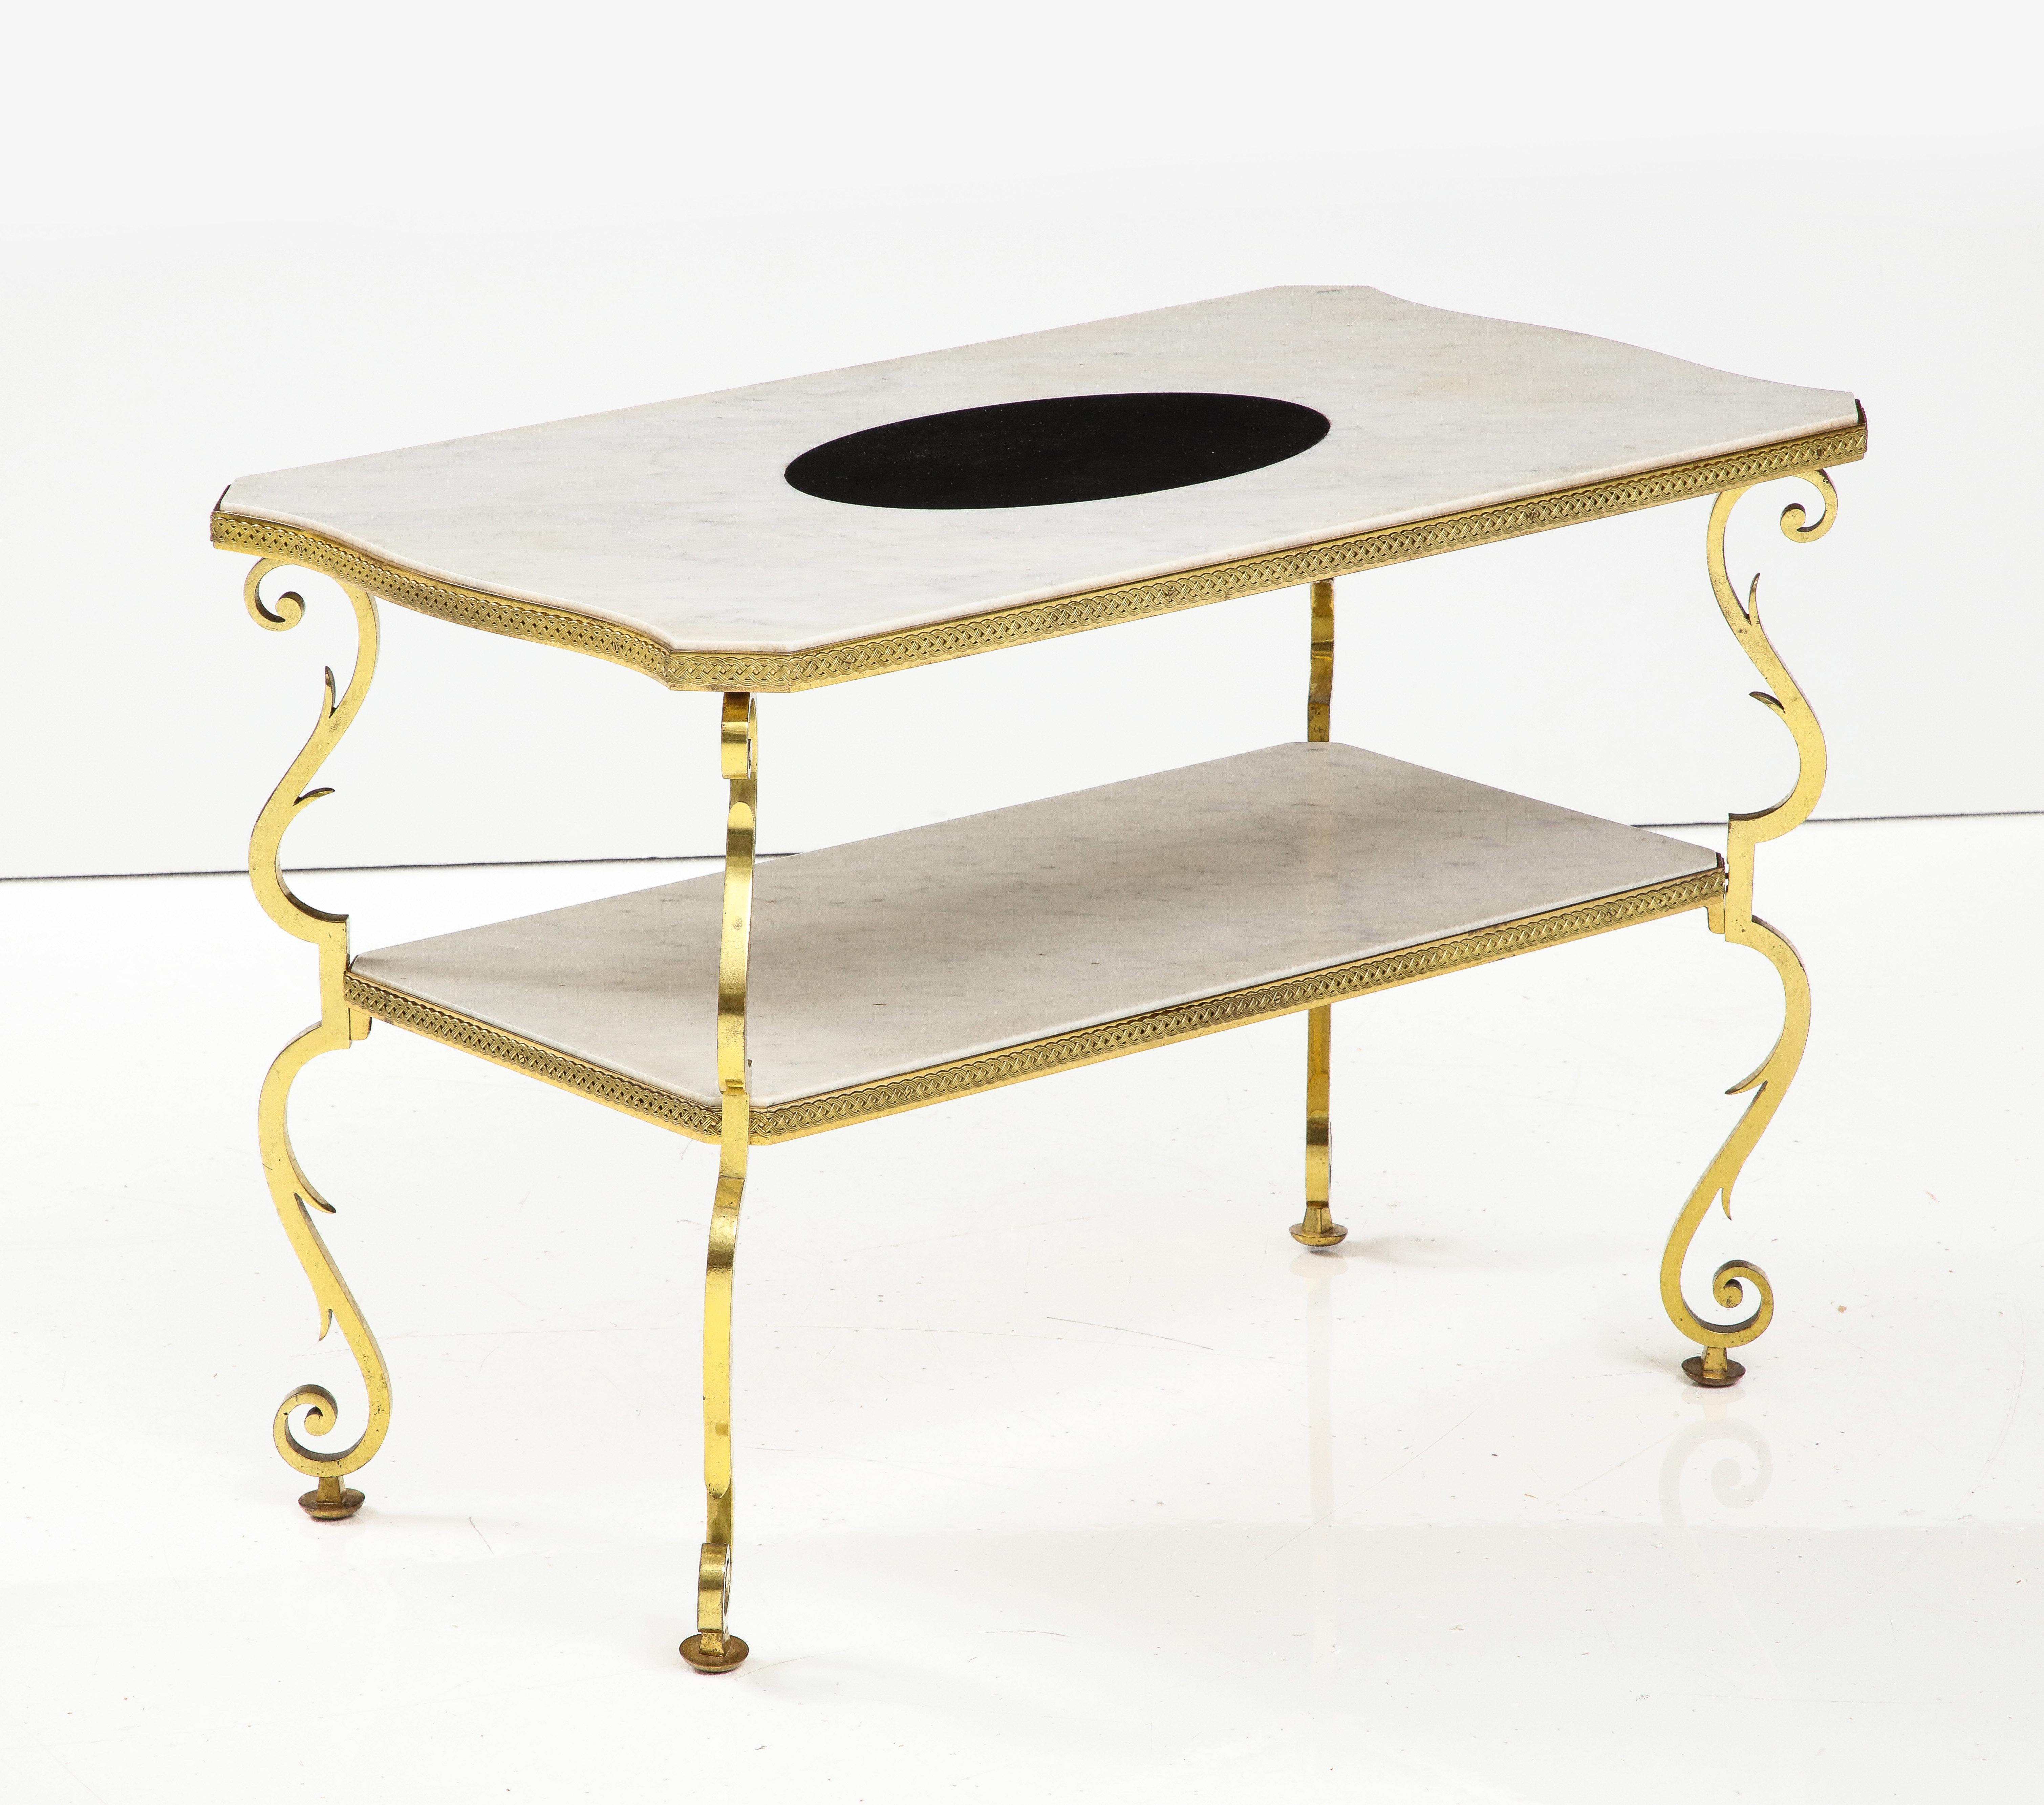 Table d'appoint en marbre et bronze doré de Gilbert Poillerat, France, c. 1950. 

Cette rare et splendide table d'appoint se compose d'un cadre en bronze doré, de pieds végétaux à volutes et de deux étages de plateaux en marbre. Des garnitures